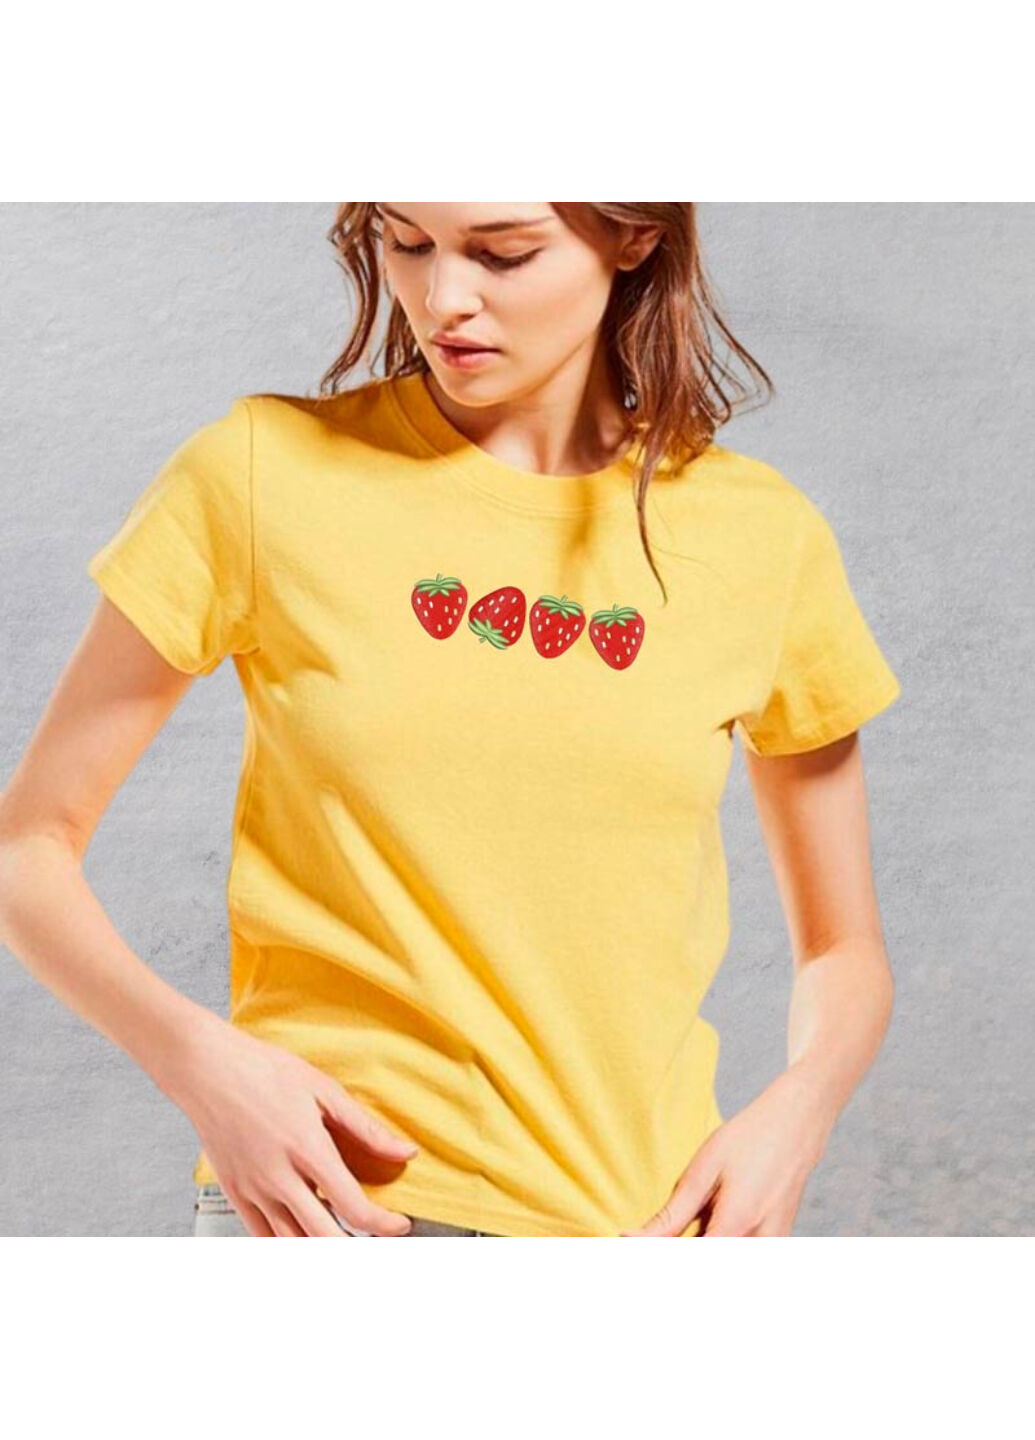 Жовта футболка з вишивкою полуничка 02-1 жіноча жовтий xl No Brand